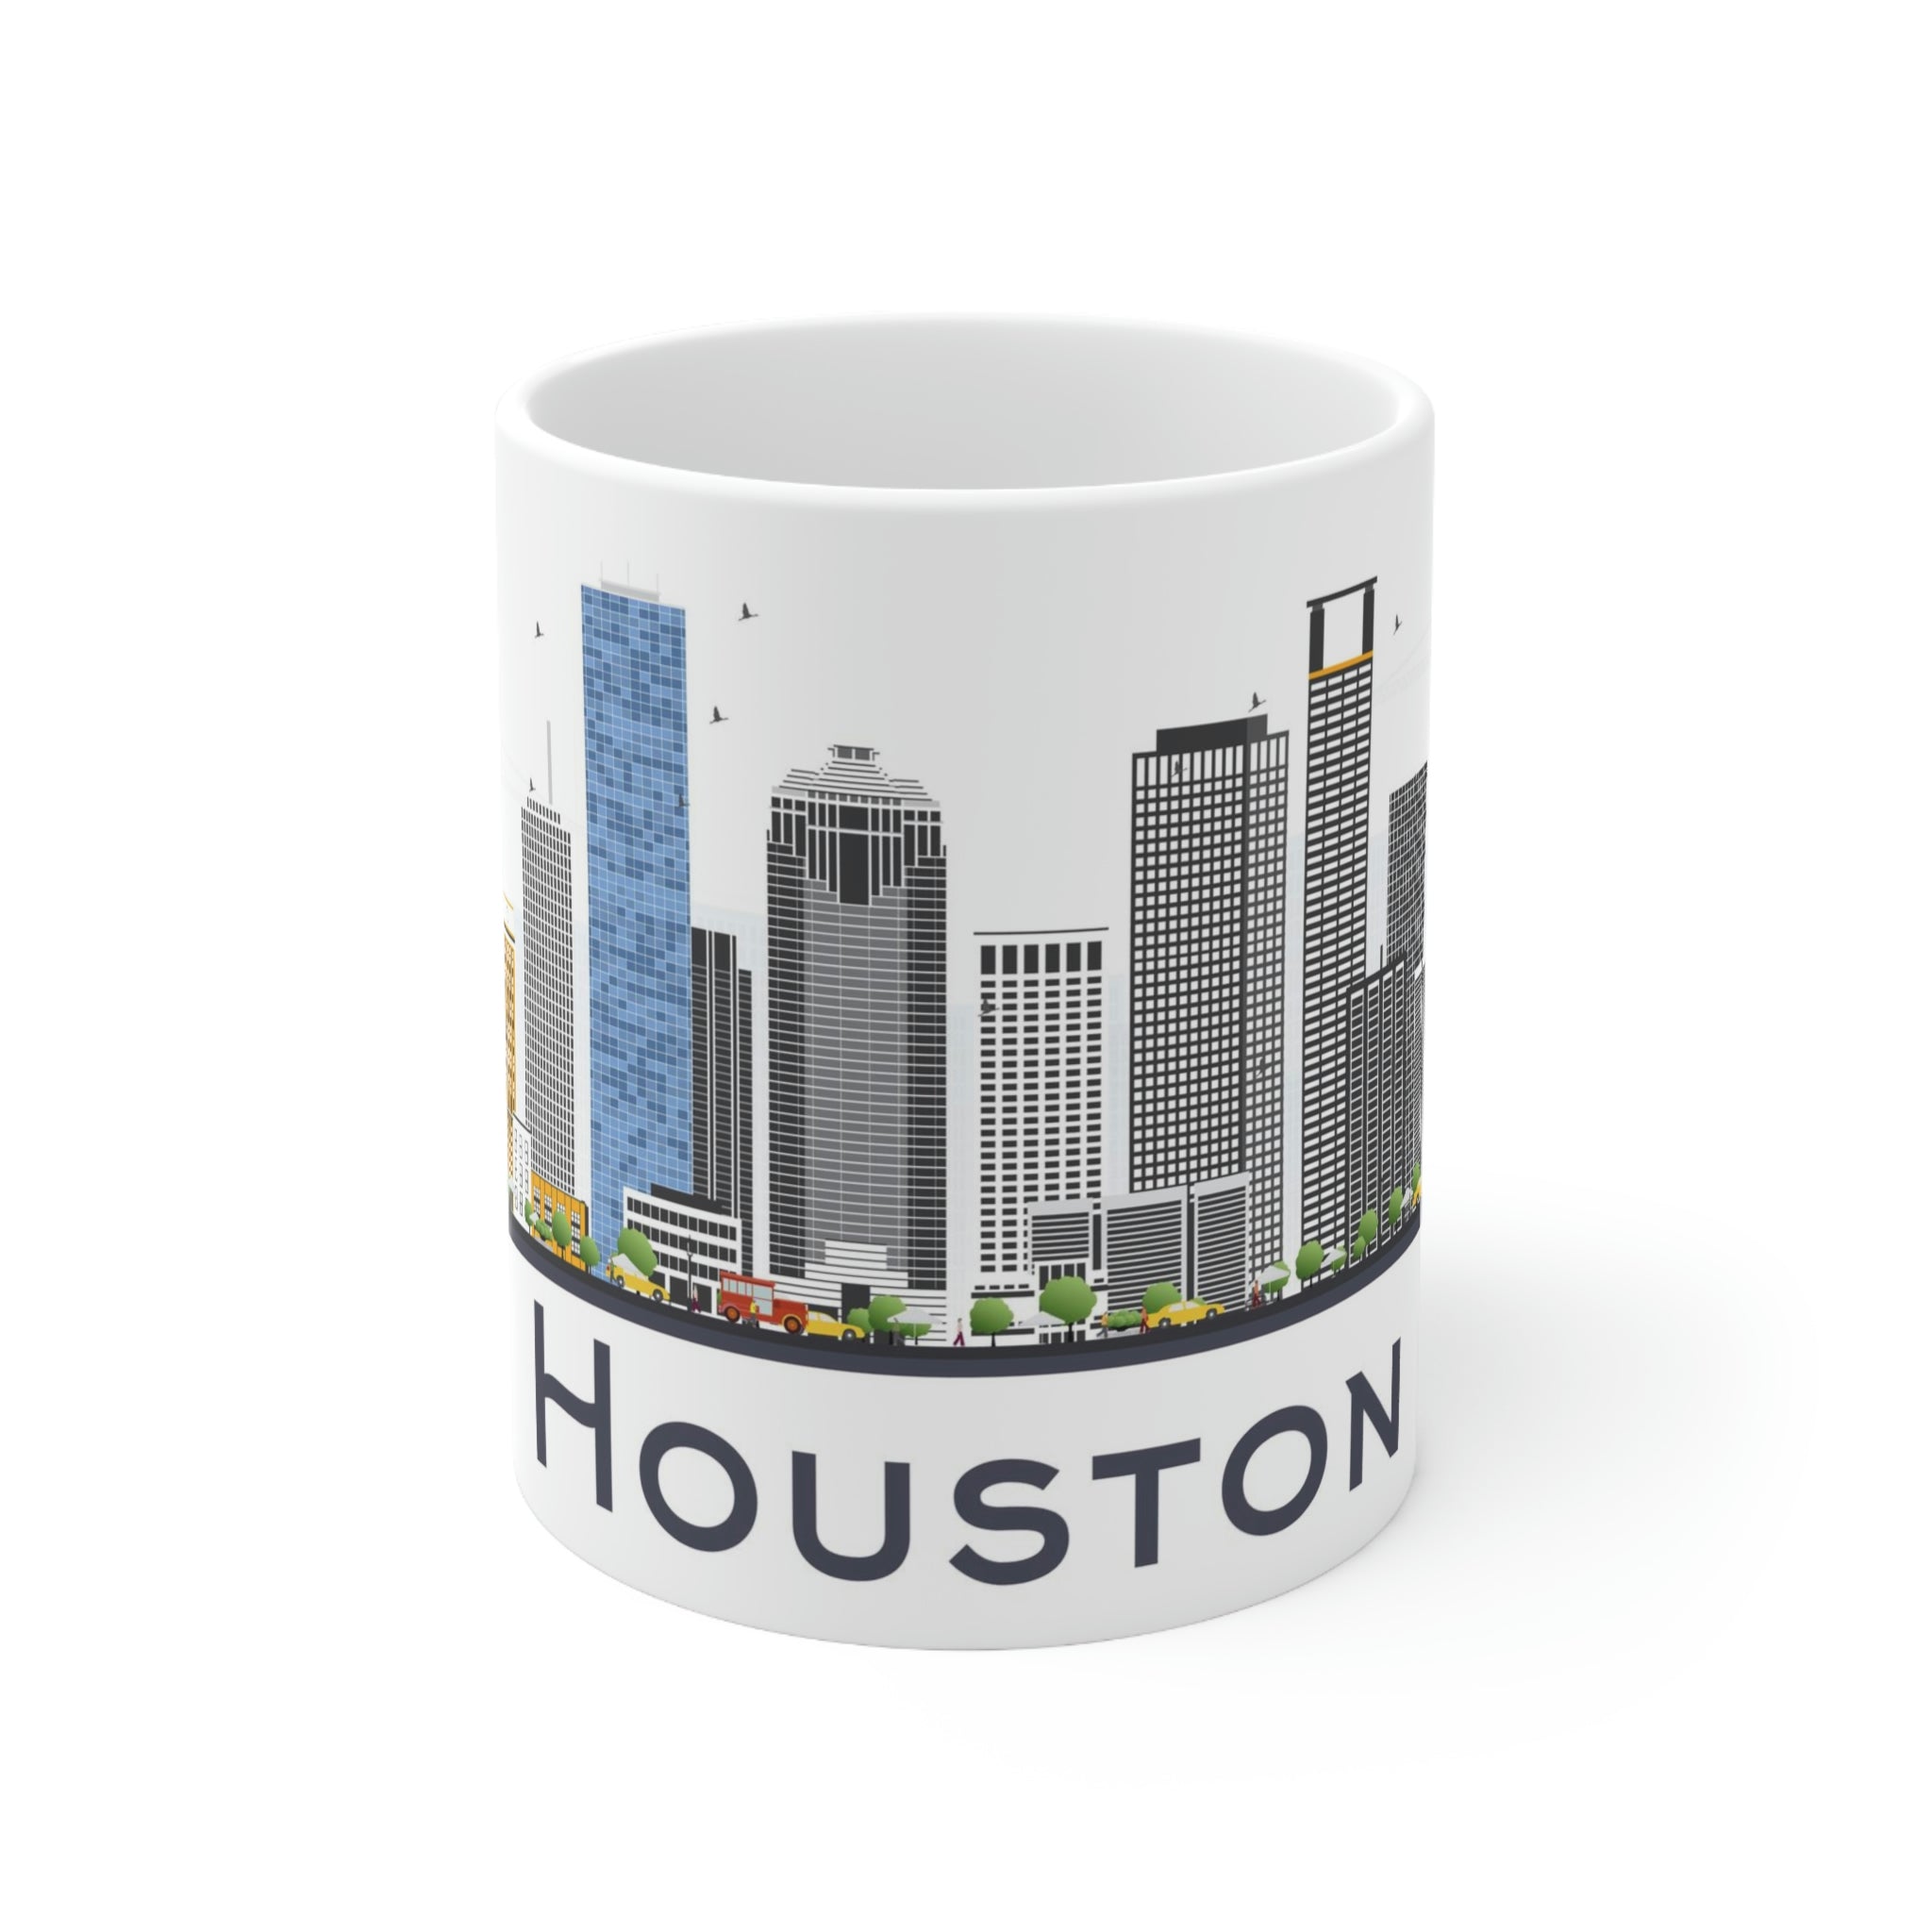 Houston Texas Coffee Mug - Ezra's Clothing - Mug